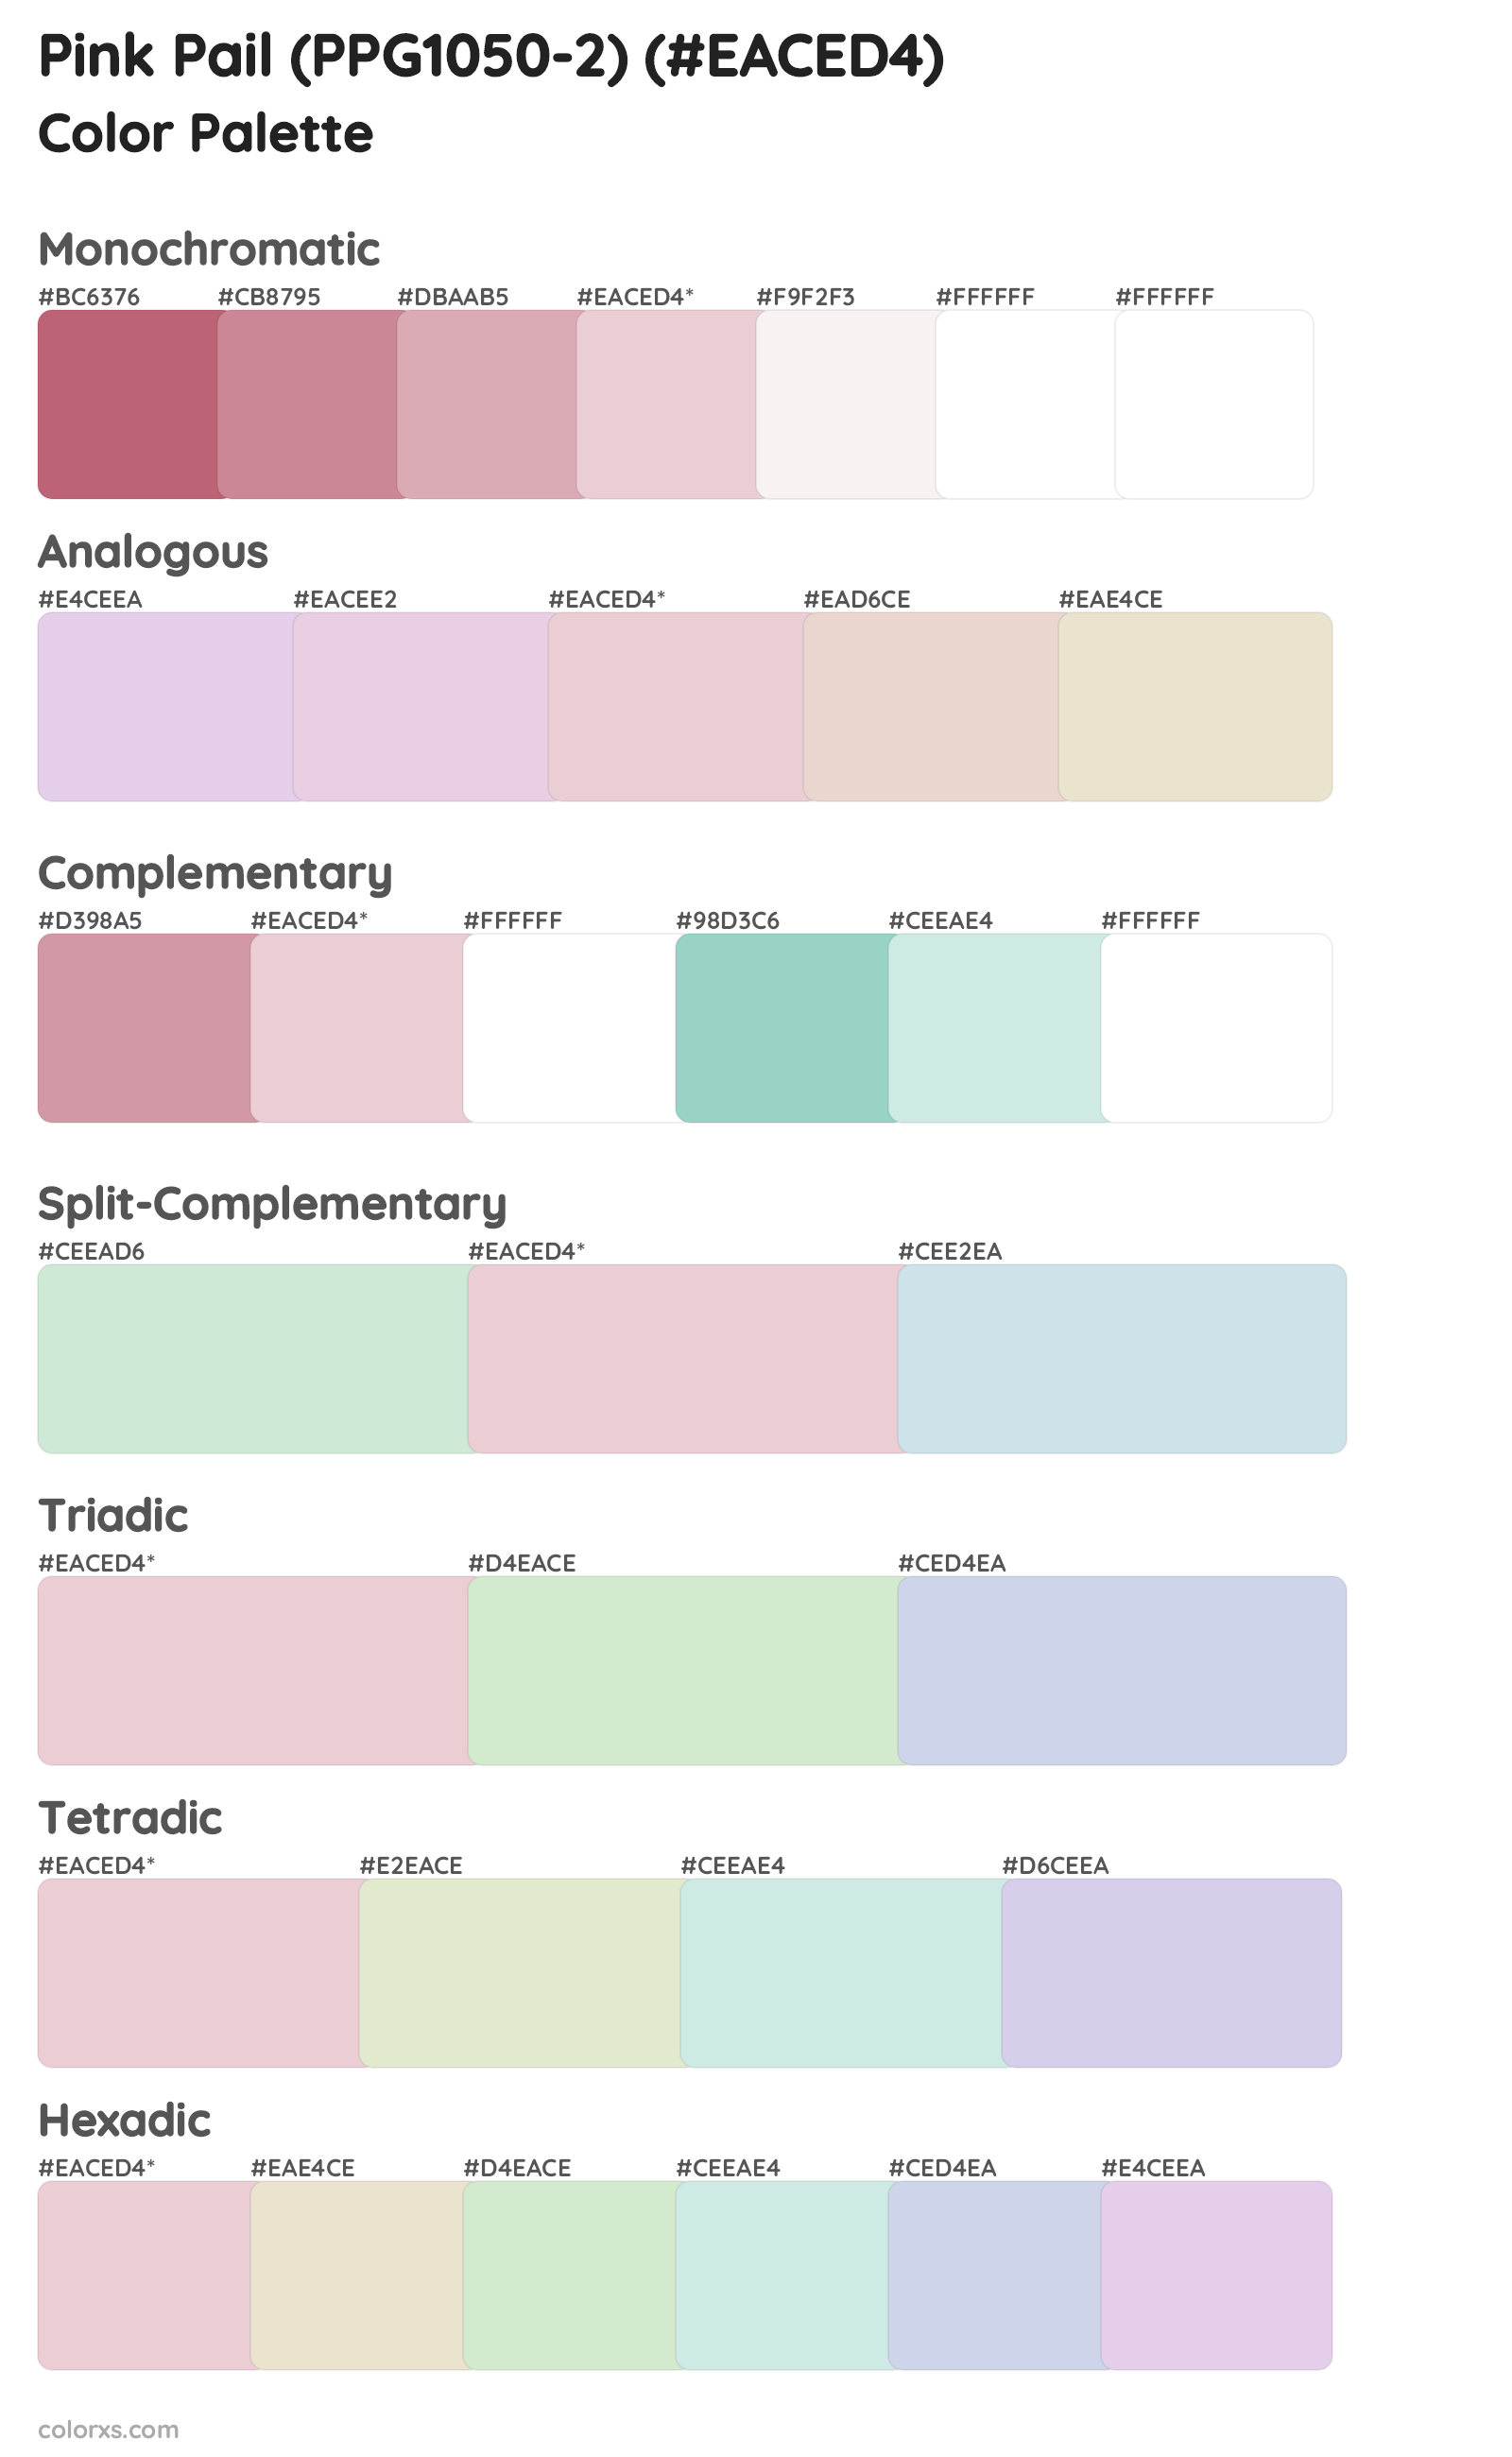 Pink Pail (PPG1050-2) Color Scheme Palettes